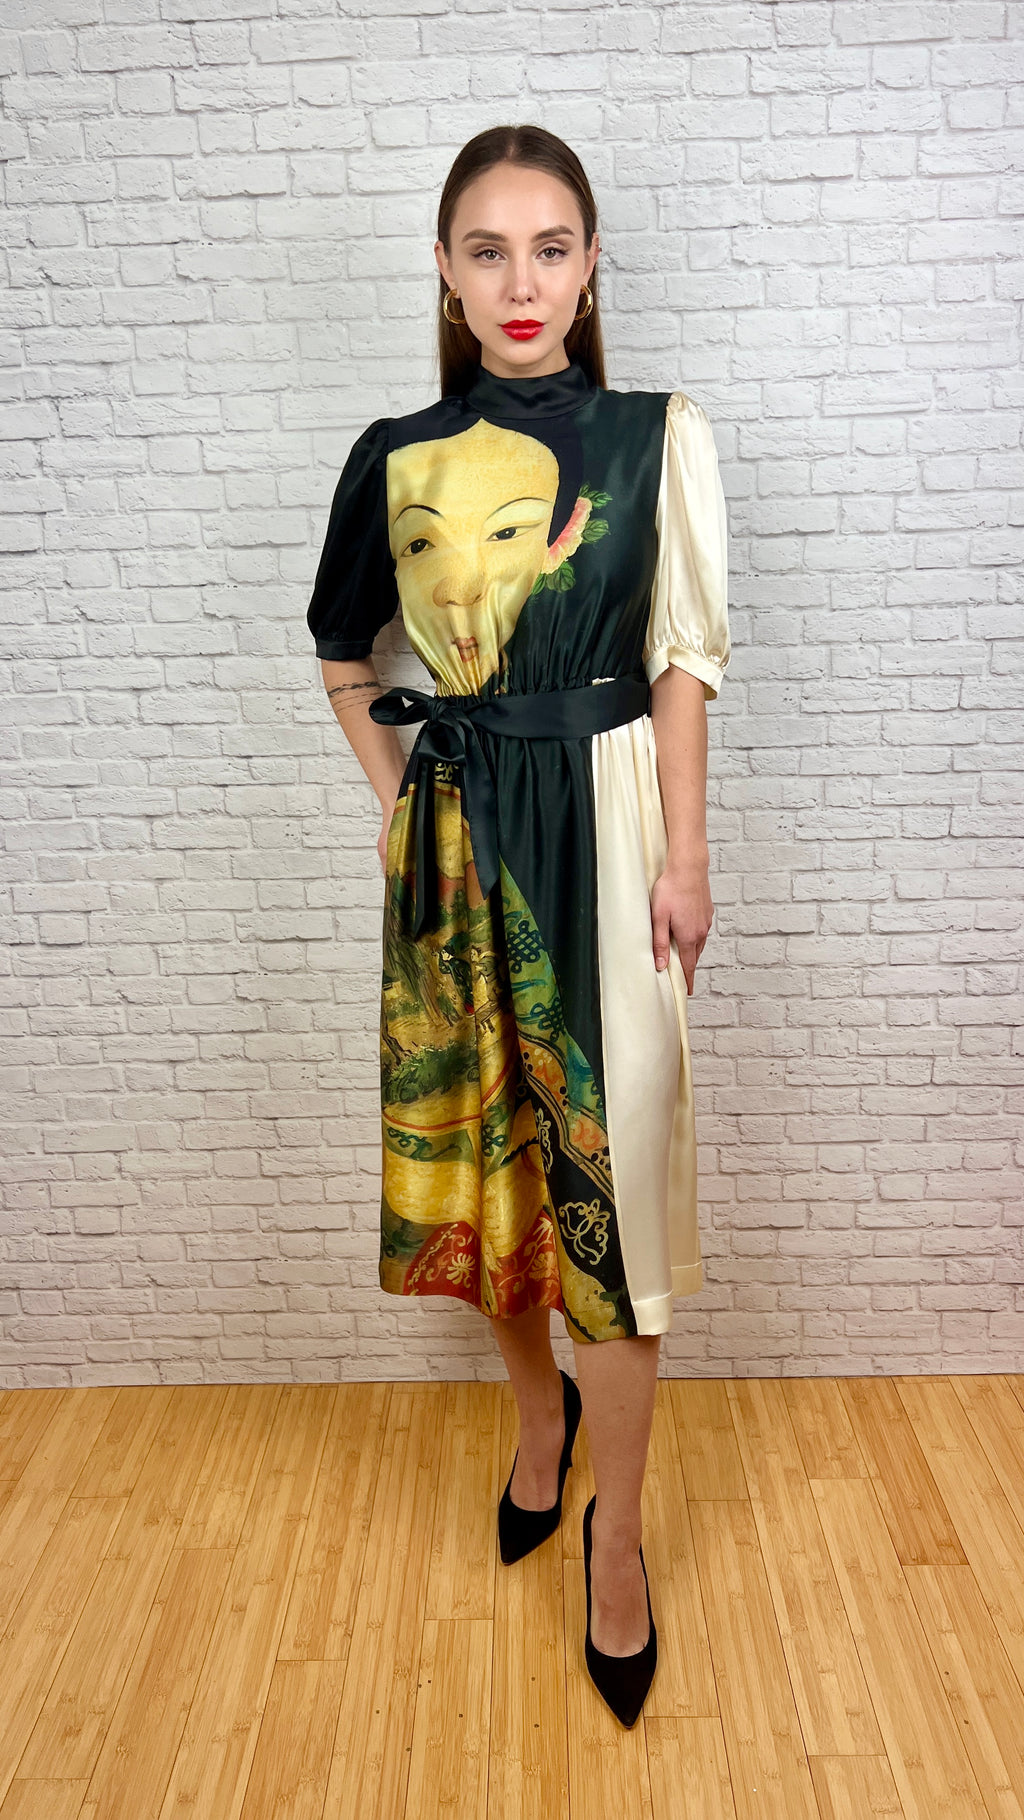 SIMONE ROCHA Portrait-Print Silk Midi Dress with Pockets, Size 6